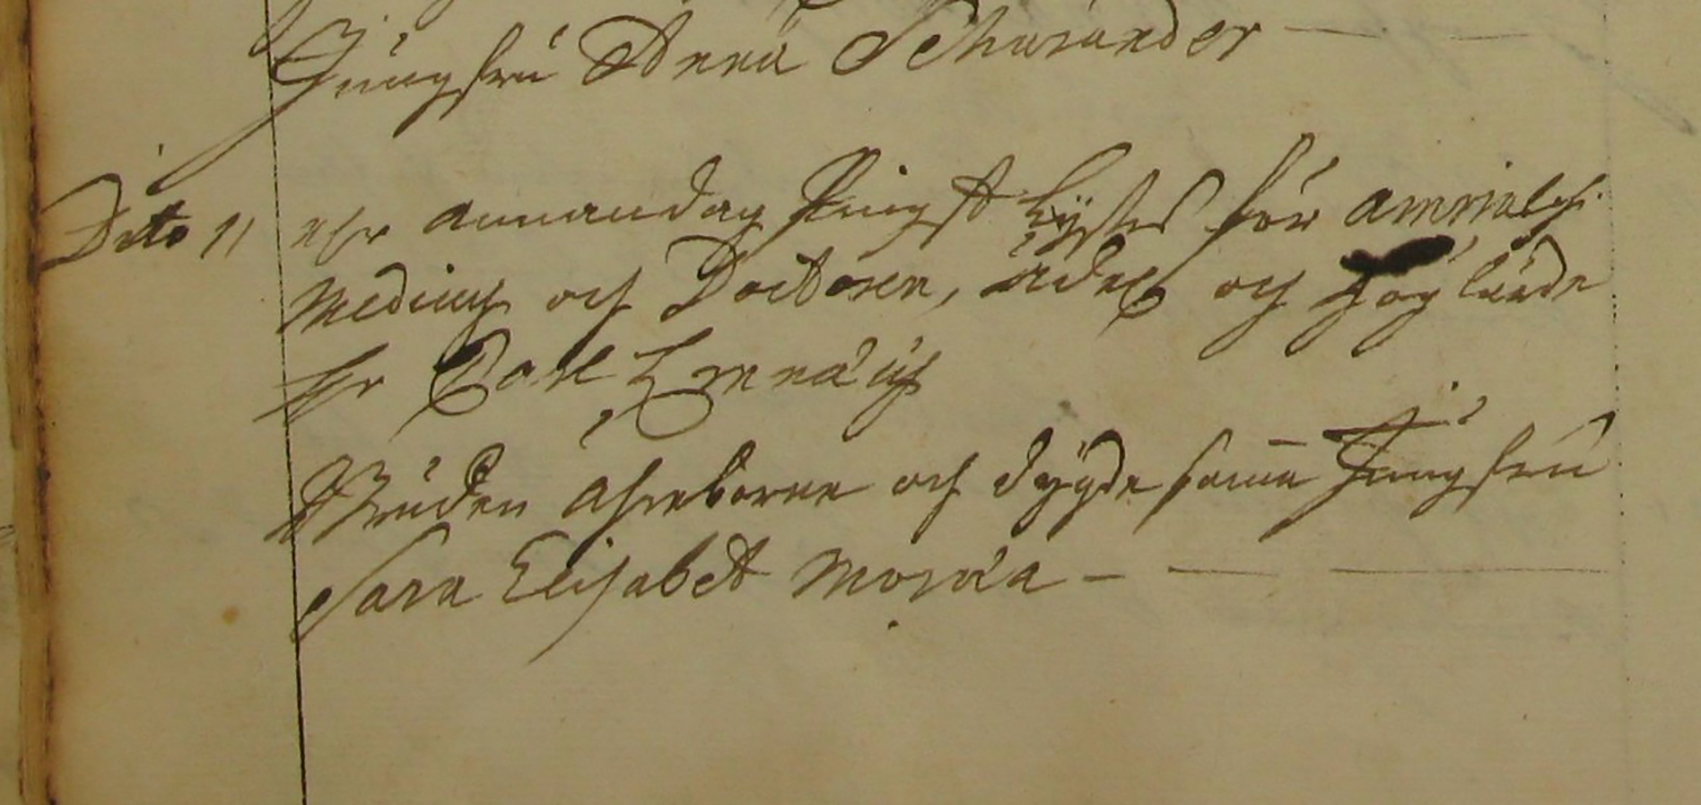 Lysningsnotisen för Linné och Sara Lisa finns att läsa i Stora Kopparbergs kyrkobok för året 1739.Foto Arkiv Digital..jpg